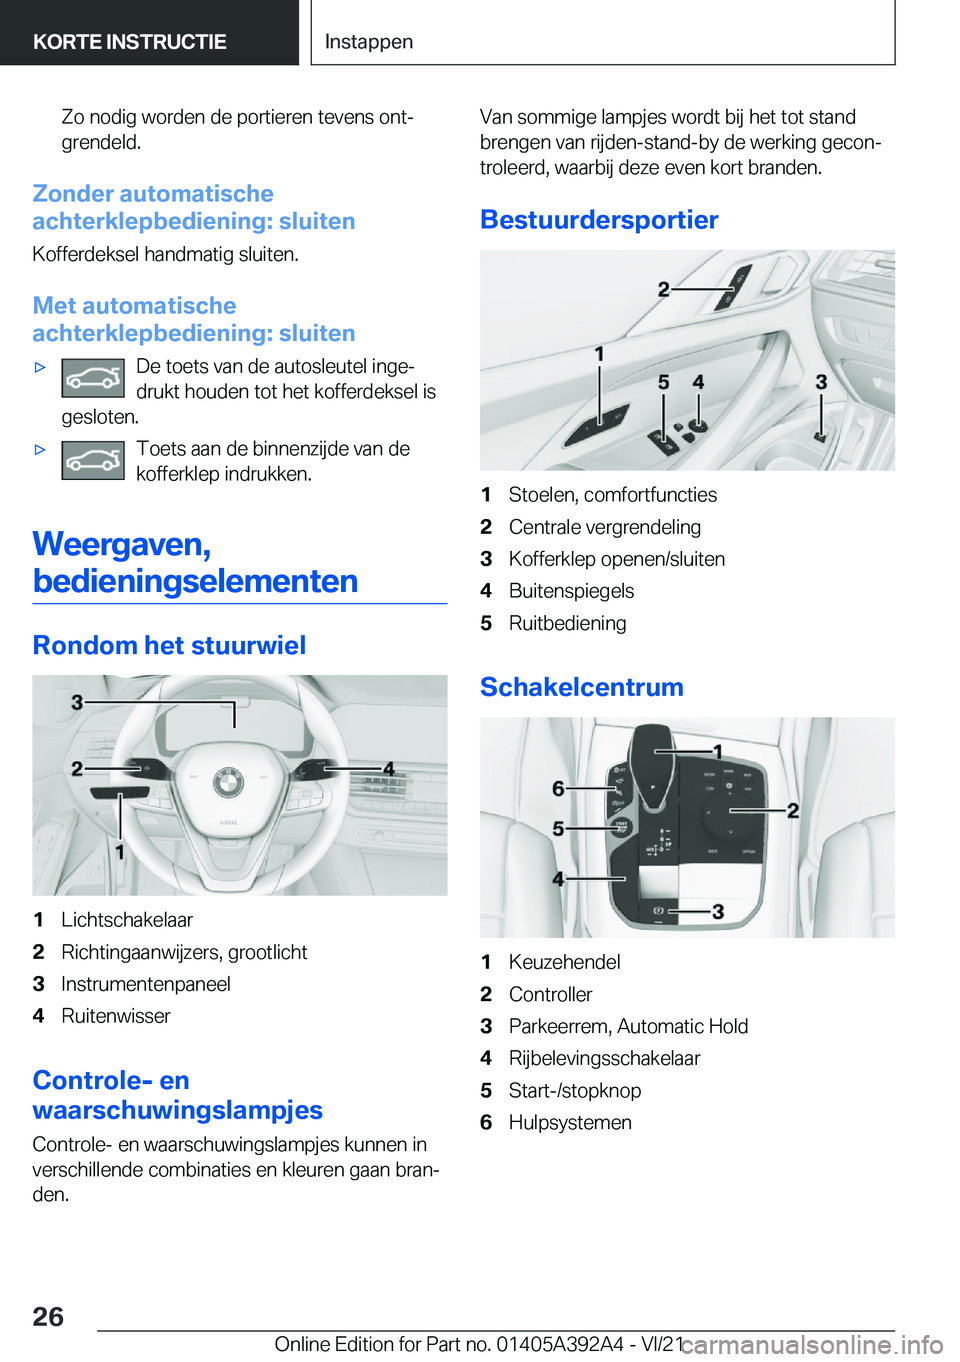 BMW 4 SERIES 2022  Instructieboekjes (in Dutch) �Z�o��n�o�d�i�g��w�o�r�d�e�n��d�e��p�o�r�t�i�e�r�e�n��t�e�v�e�n�s��o�n�tj
�g�r�e�n�d�e�l�d�.
�Z�o�n�d�e�r��a�u�t�o�m�a�t�i�s�c�h�e
�a�c�h�t�e�r�k�l�e�p�b�e�d�i�e�n�i�n�g�:��s�l�u�i�t�e�n
�K�o